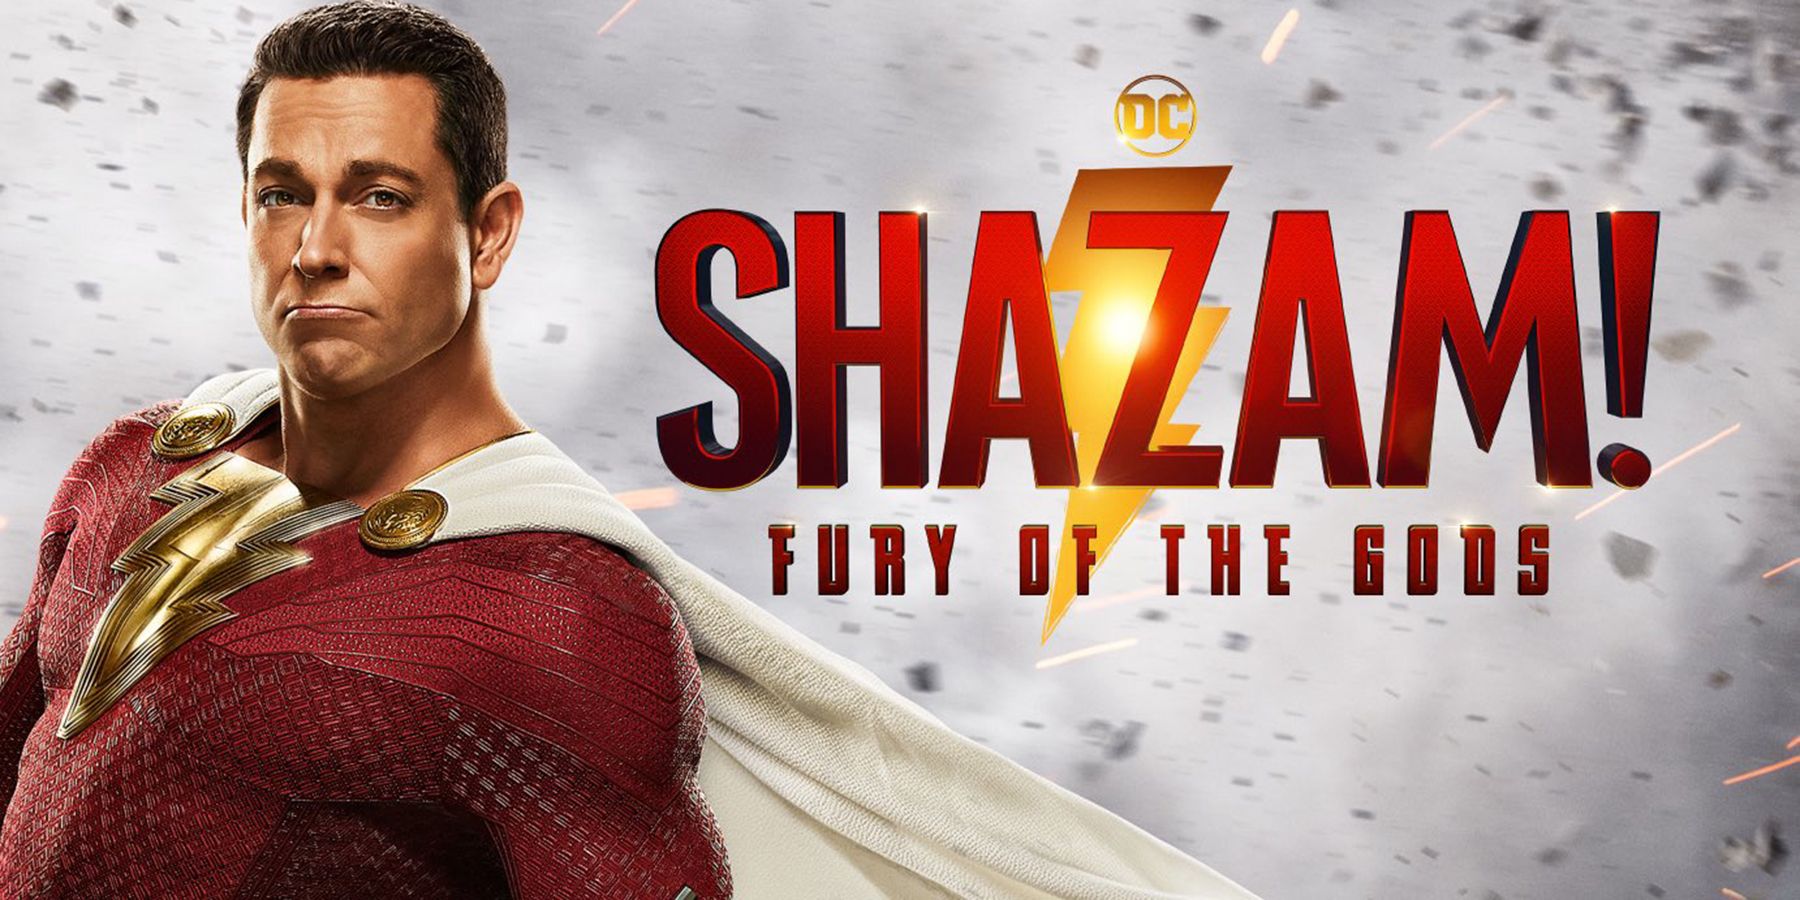 Zachary Levi unveils new trailer of 'Shazam! Fury of the Gods' at